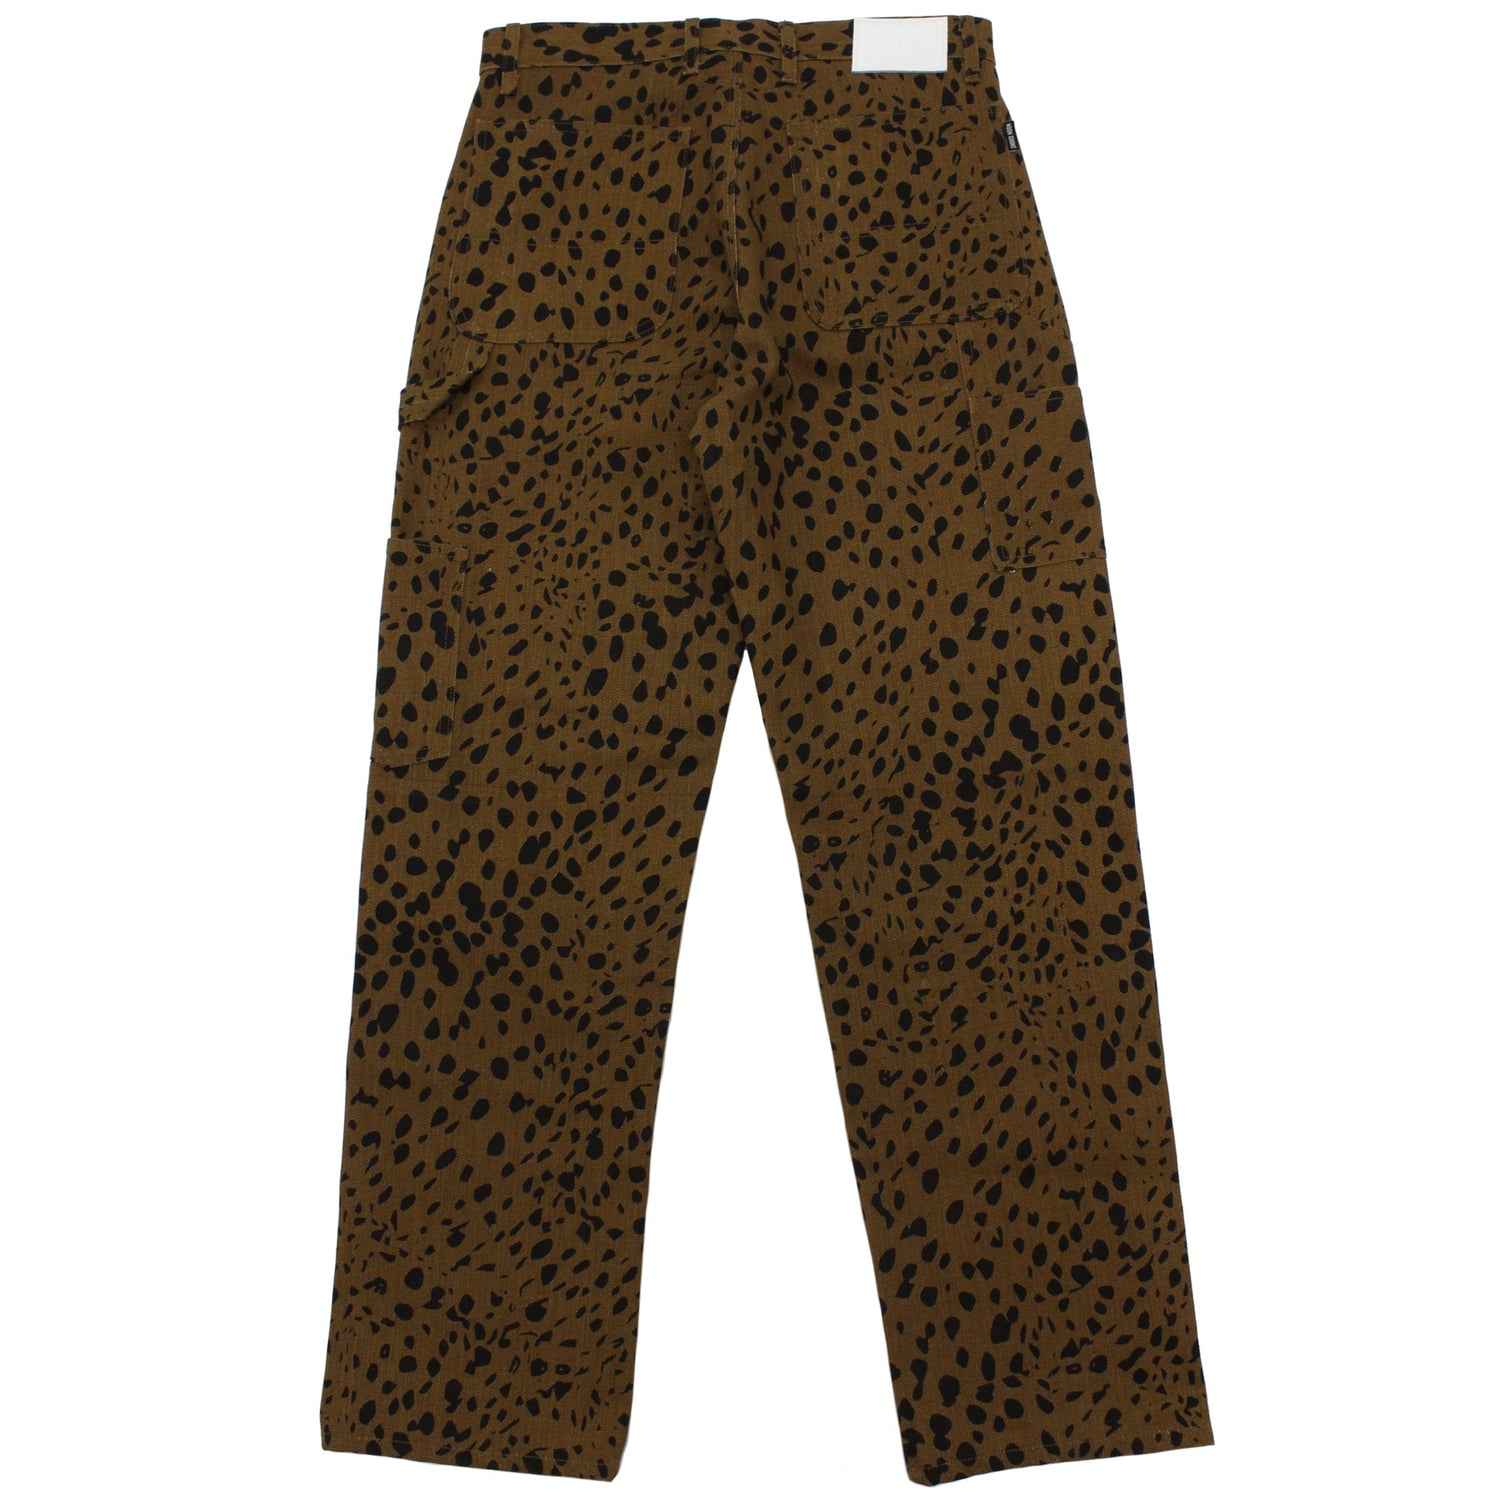 Core 10 Leopard Print Multi Color Brown Active Pants Size L - 67